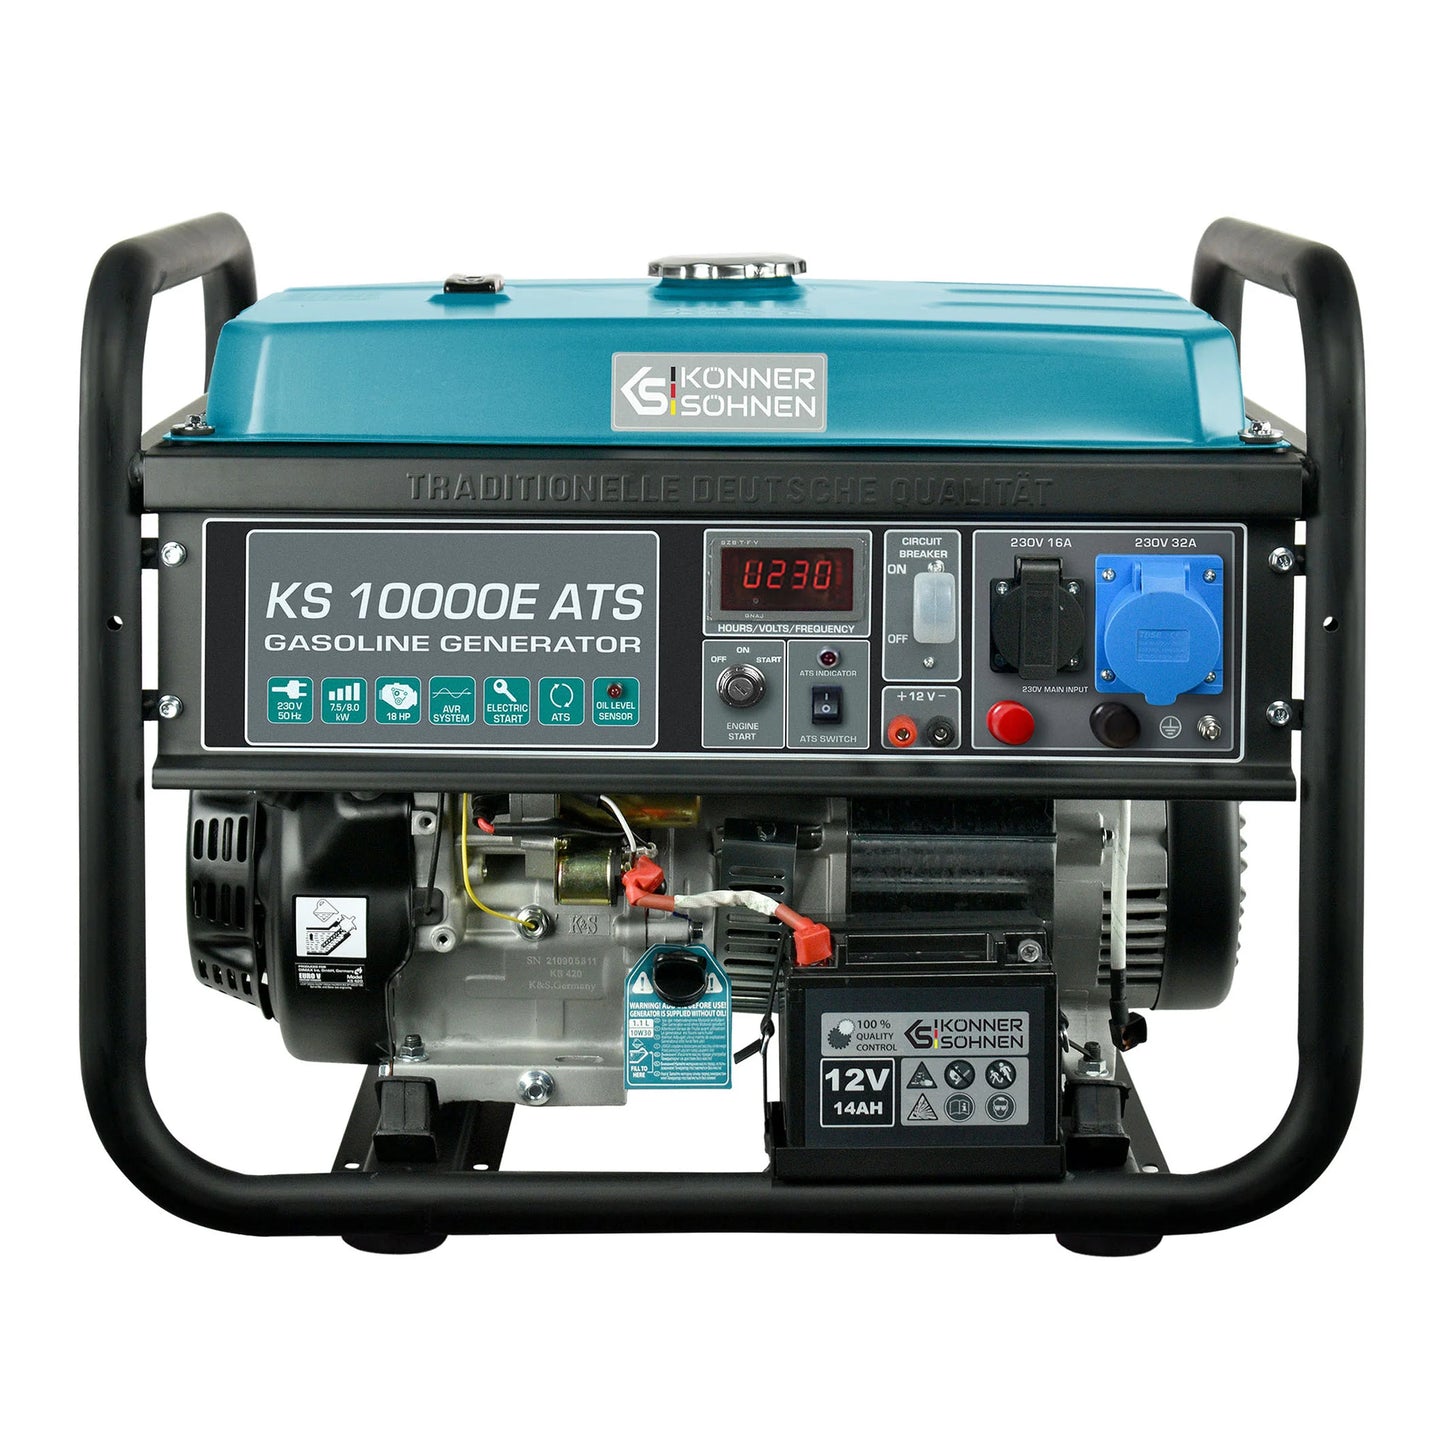 Petrol generator KS 10000E ATS 